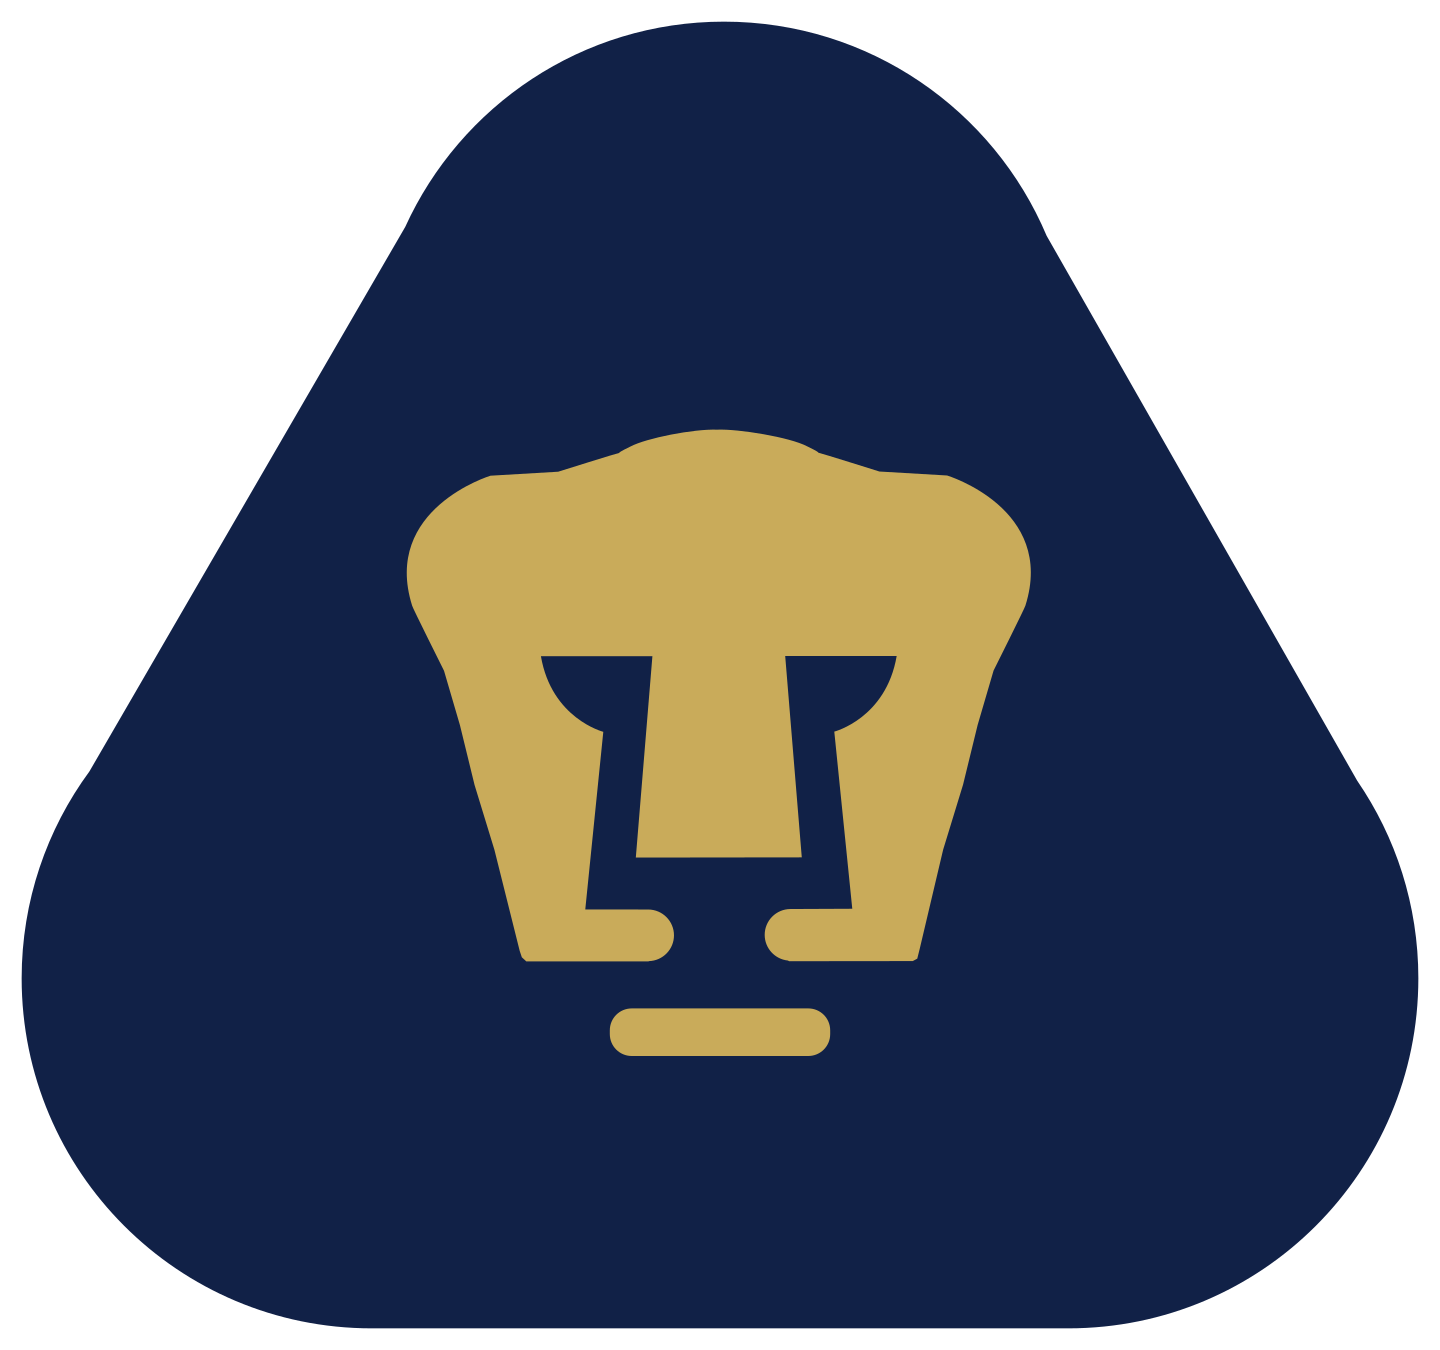 pumas unam logo 2 1 - Pumas UNAM Logo